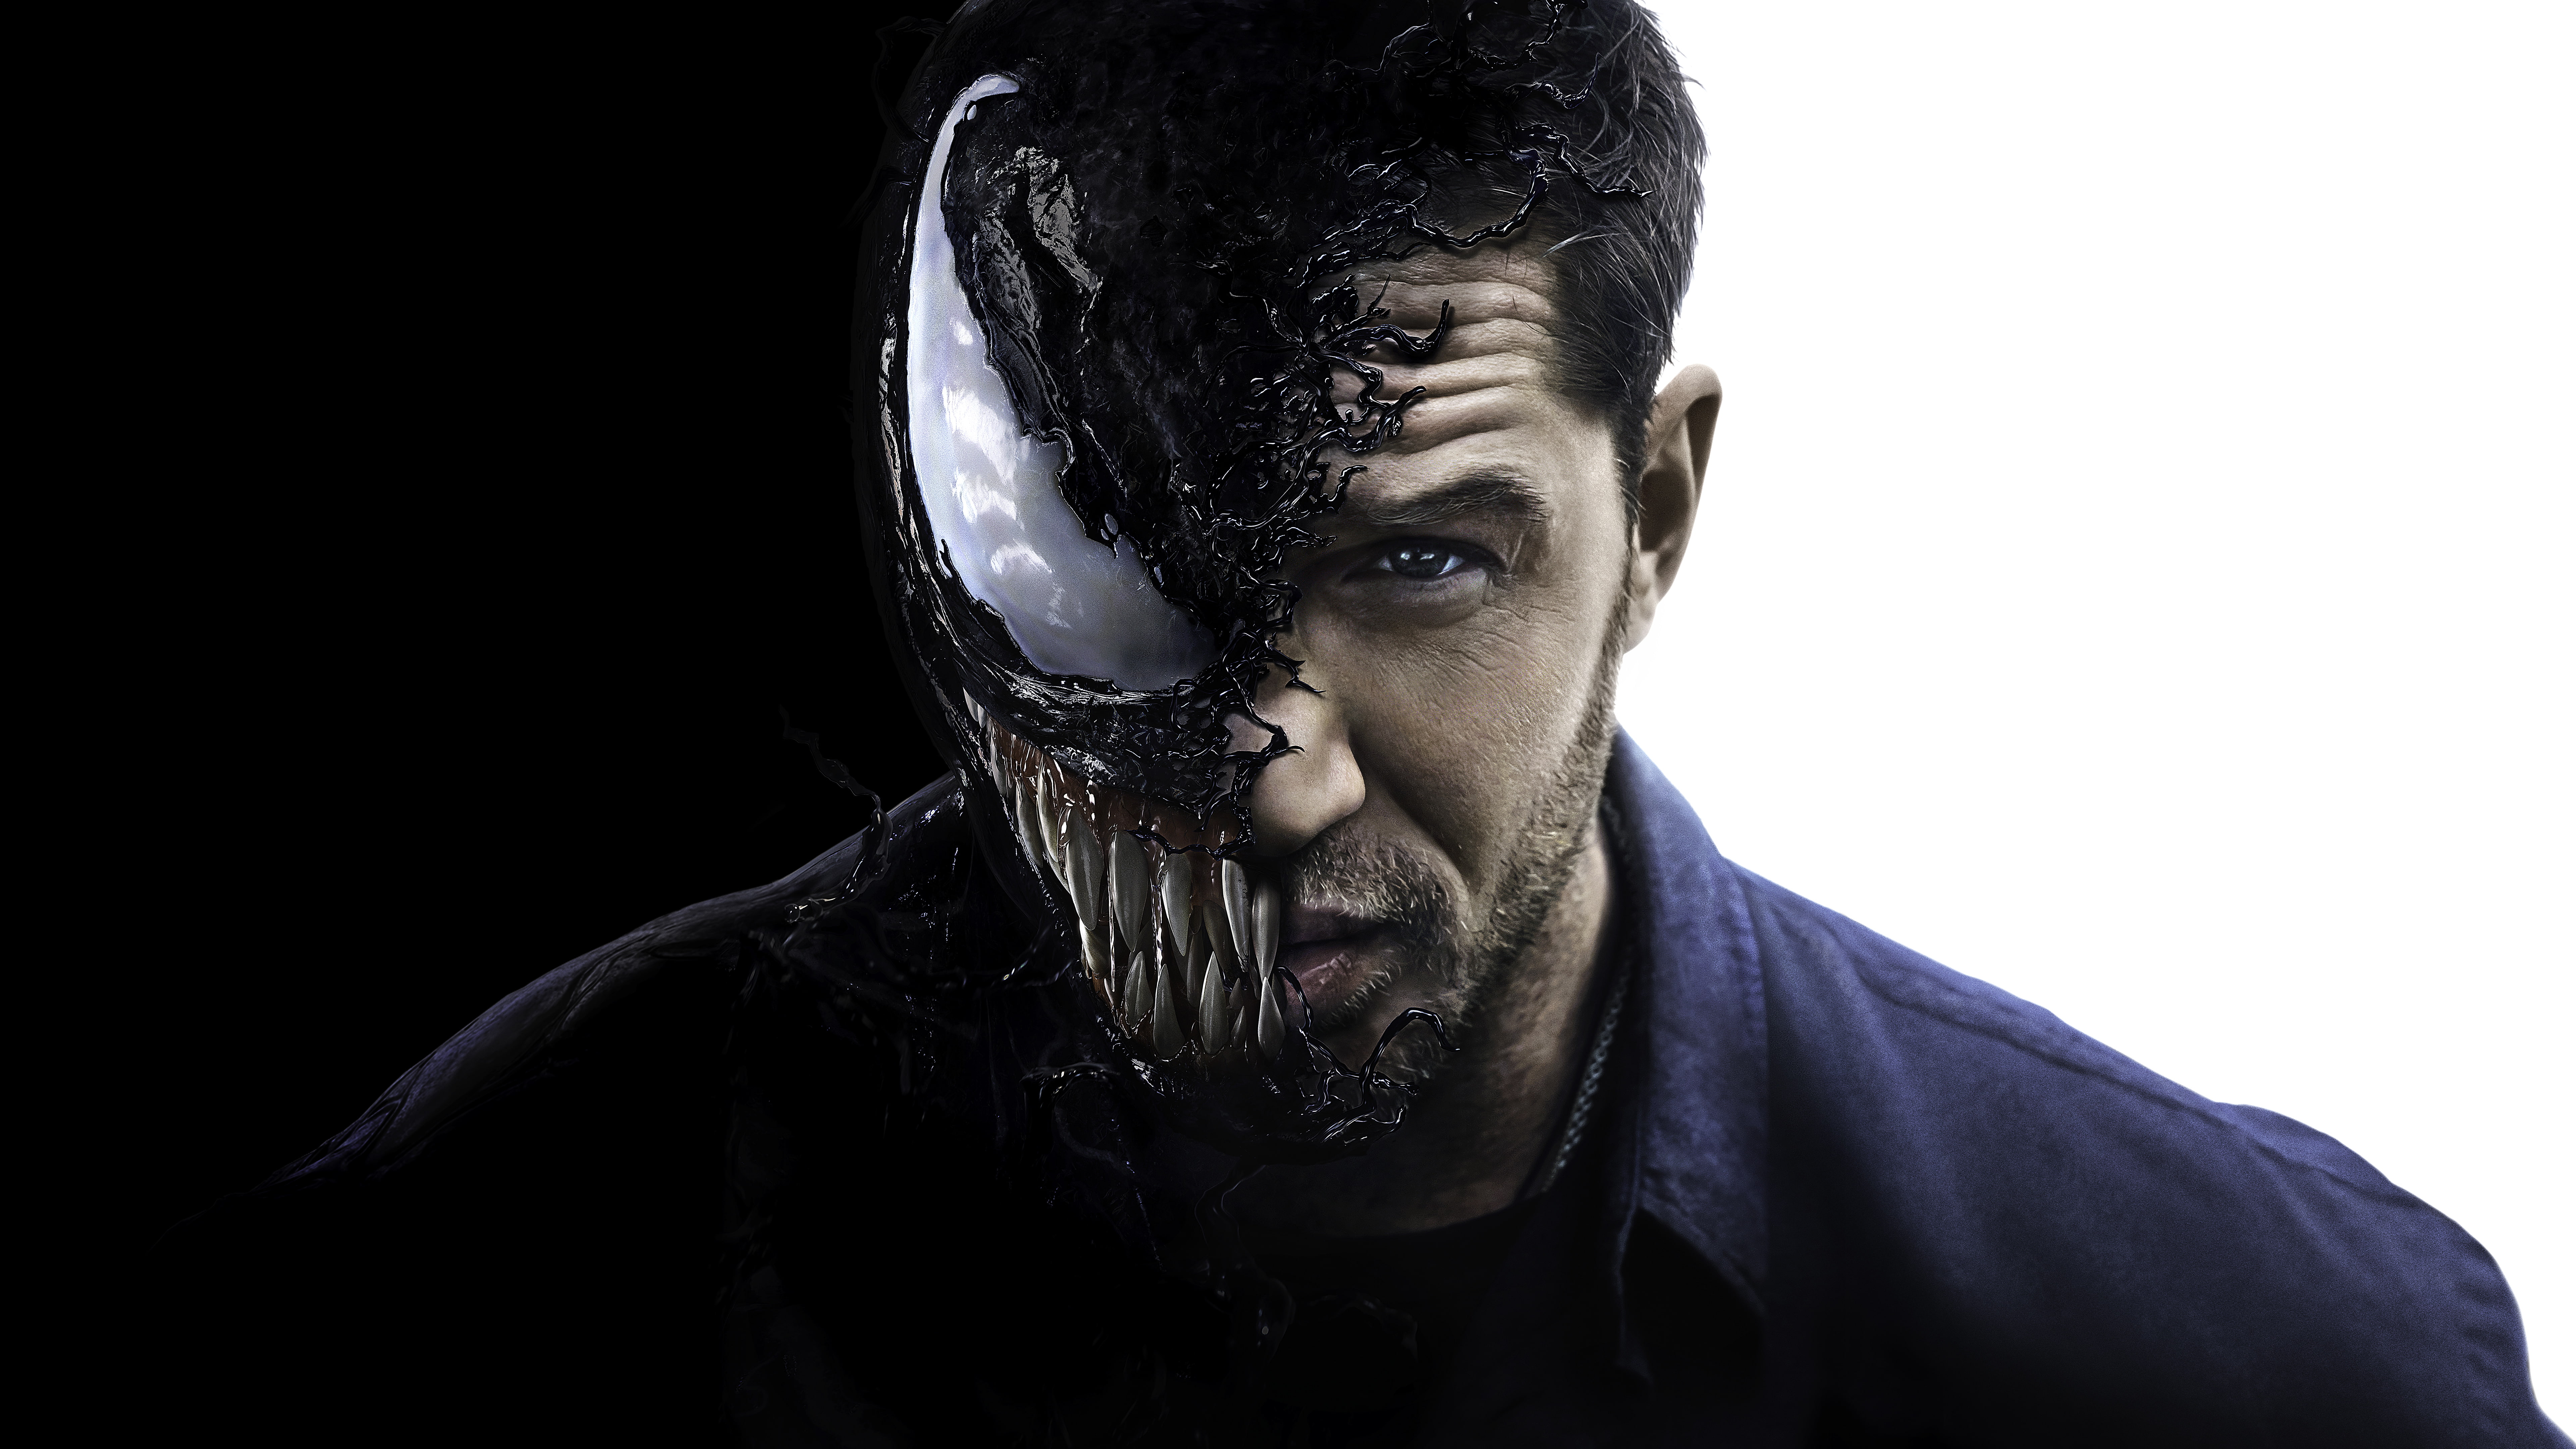 Tom Hardy as Venom 4K 8K, portrait, studio shot, headshot, one person